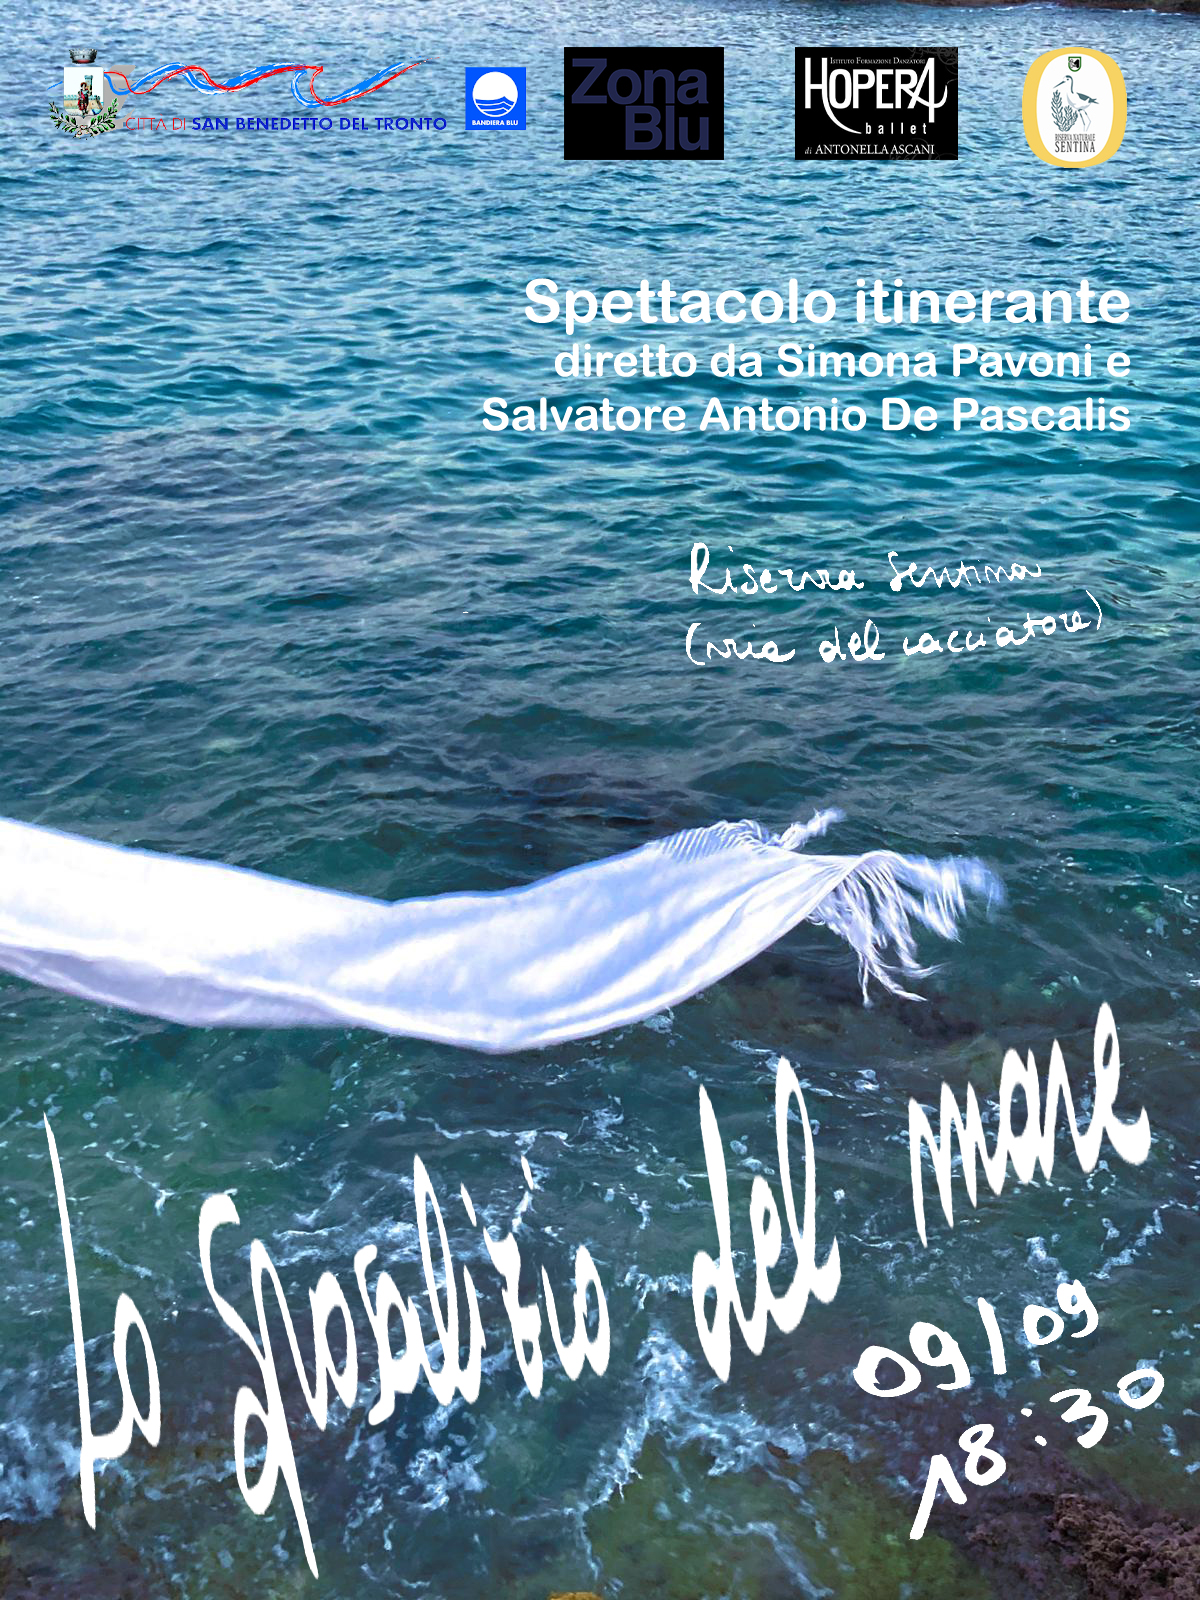 "Lo Sposalizio del Mare" - EVENTO ANNULLATO